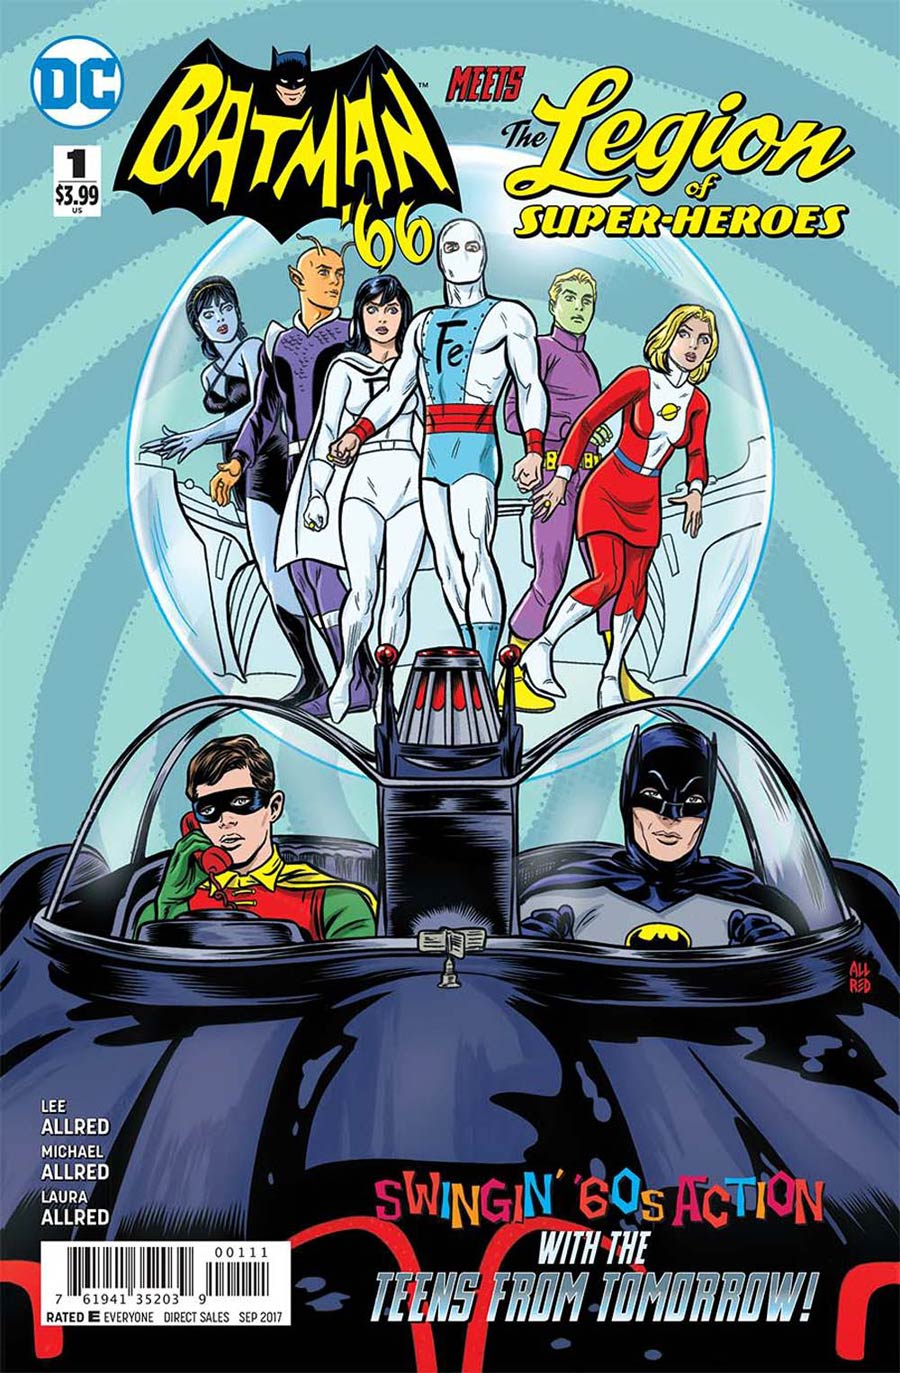 Batman 66 Meets The Legion Of Super-Heroes #1